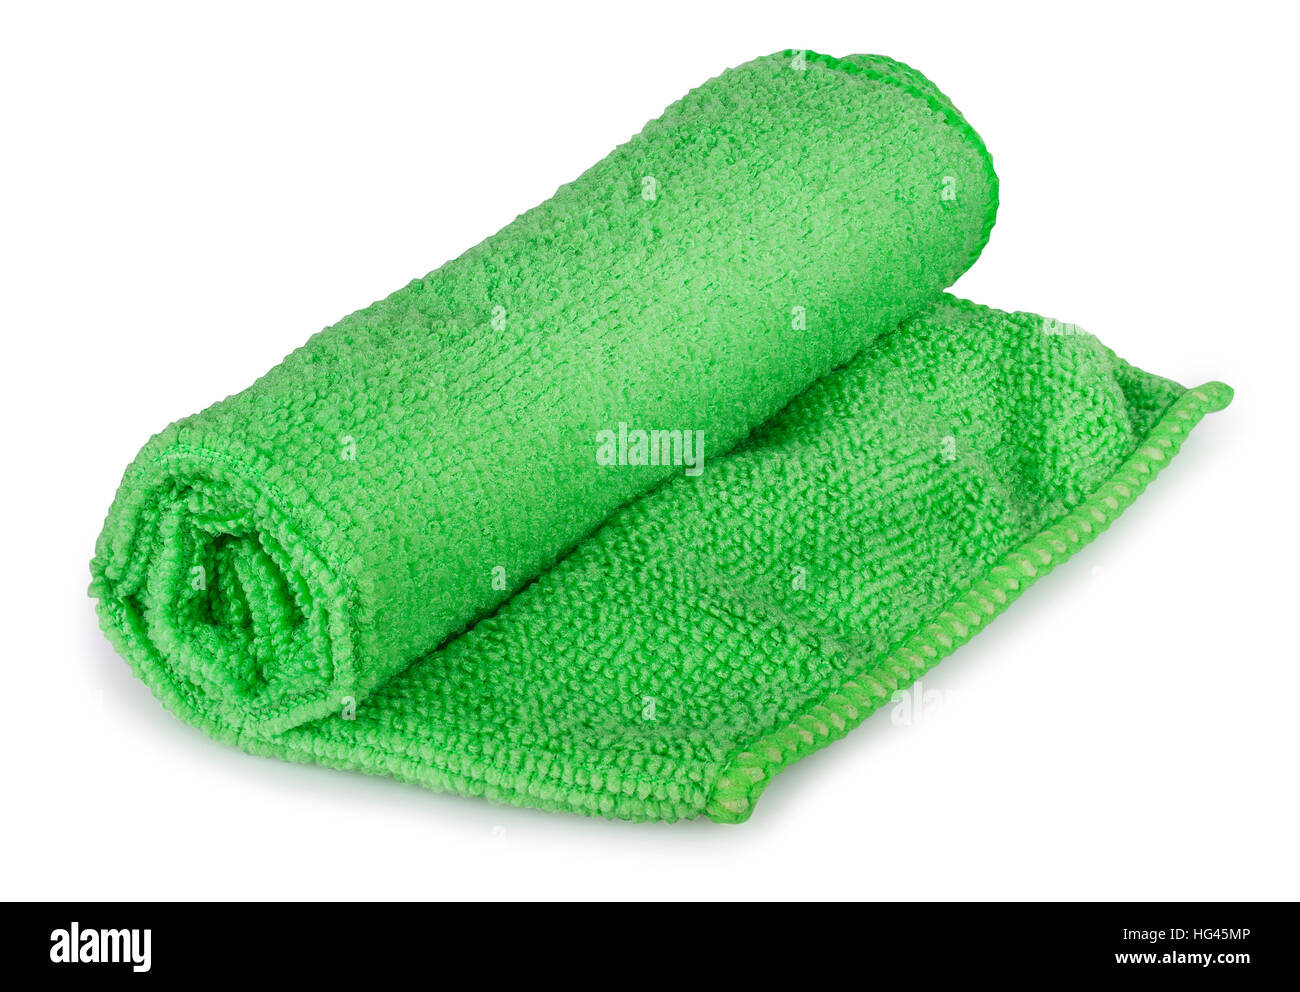 Rollengewicht grün universal Mikrofaser Serviette für Reinigung, isoliert auf weißem Hintergrund Stockfoto